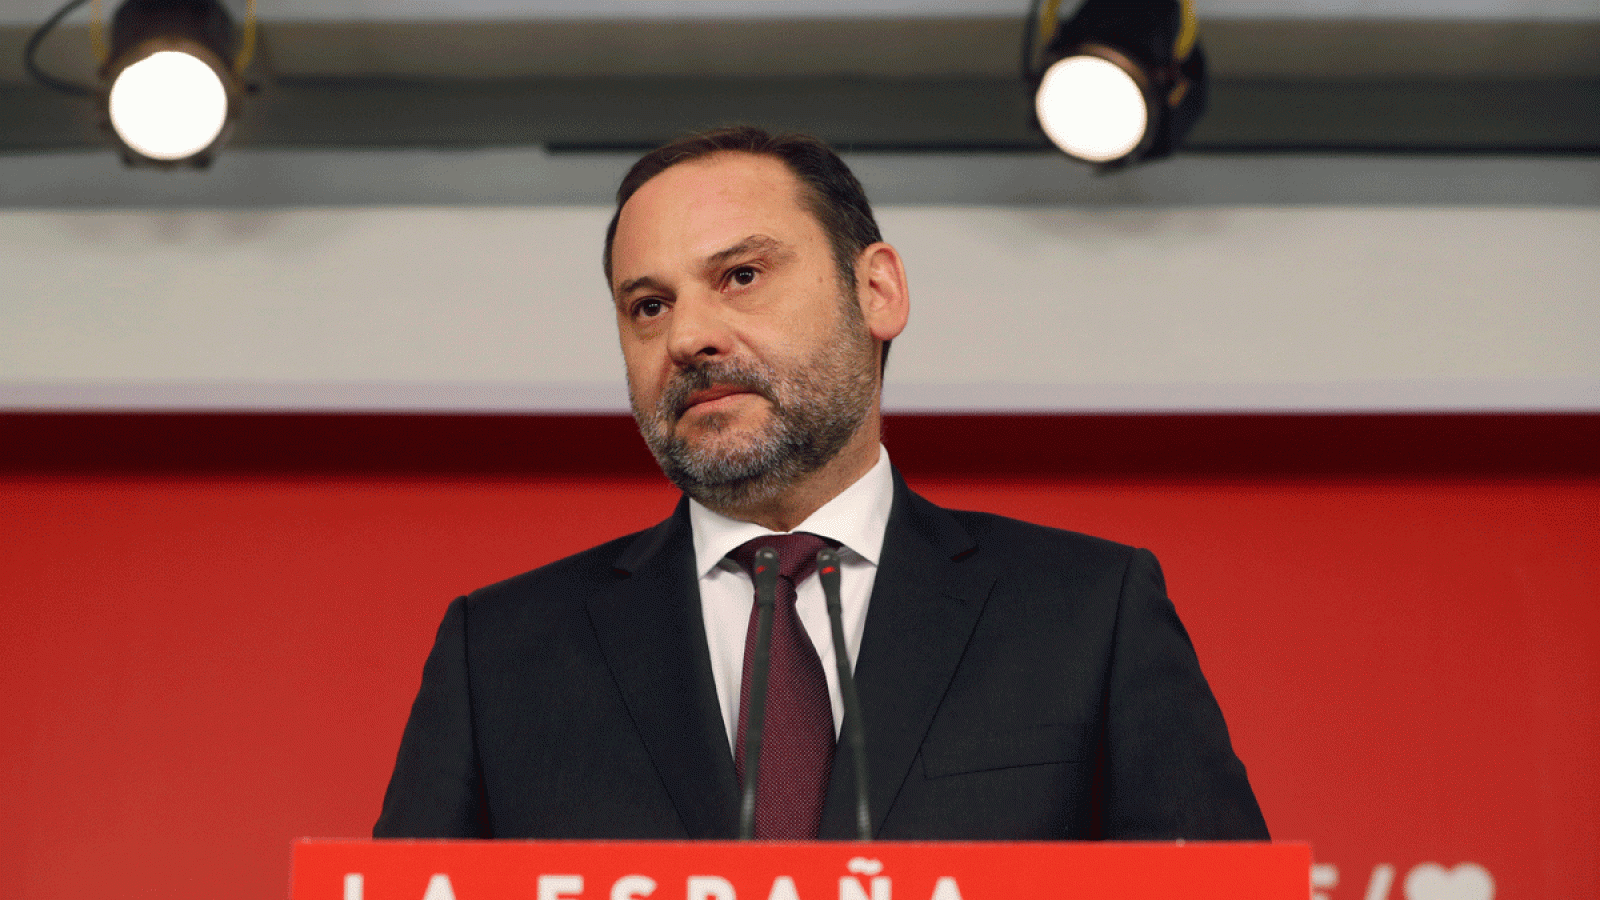 El secretario de Organización del PSOE José Luis Ábalos ha defendido la política migratoria del Gobierno